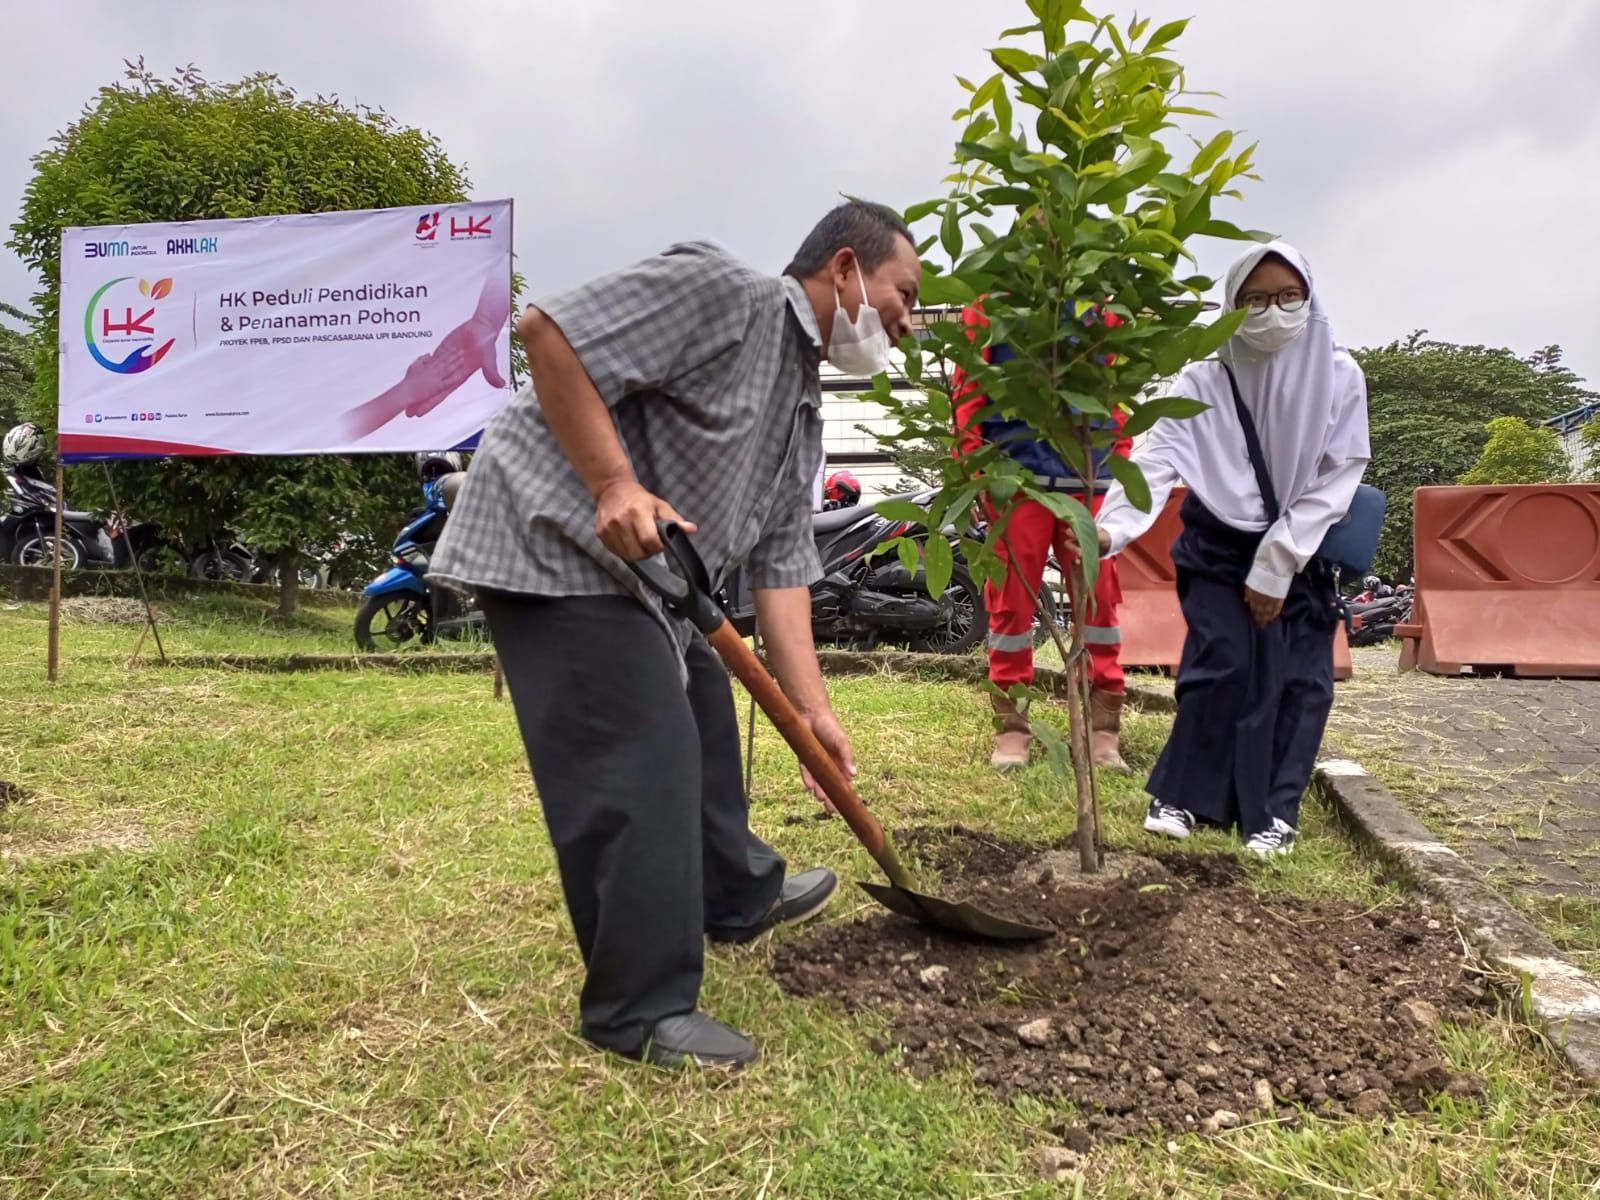 Hutama Karya ajak masyarakat tanam pohon di Bandung, Sabtu 26 Maret 2022.